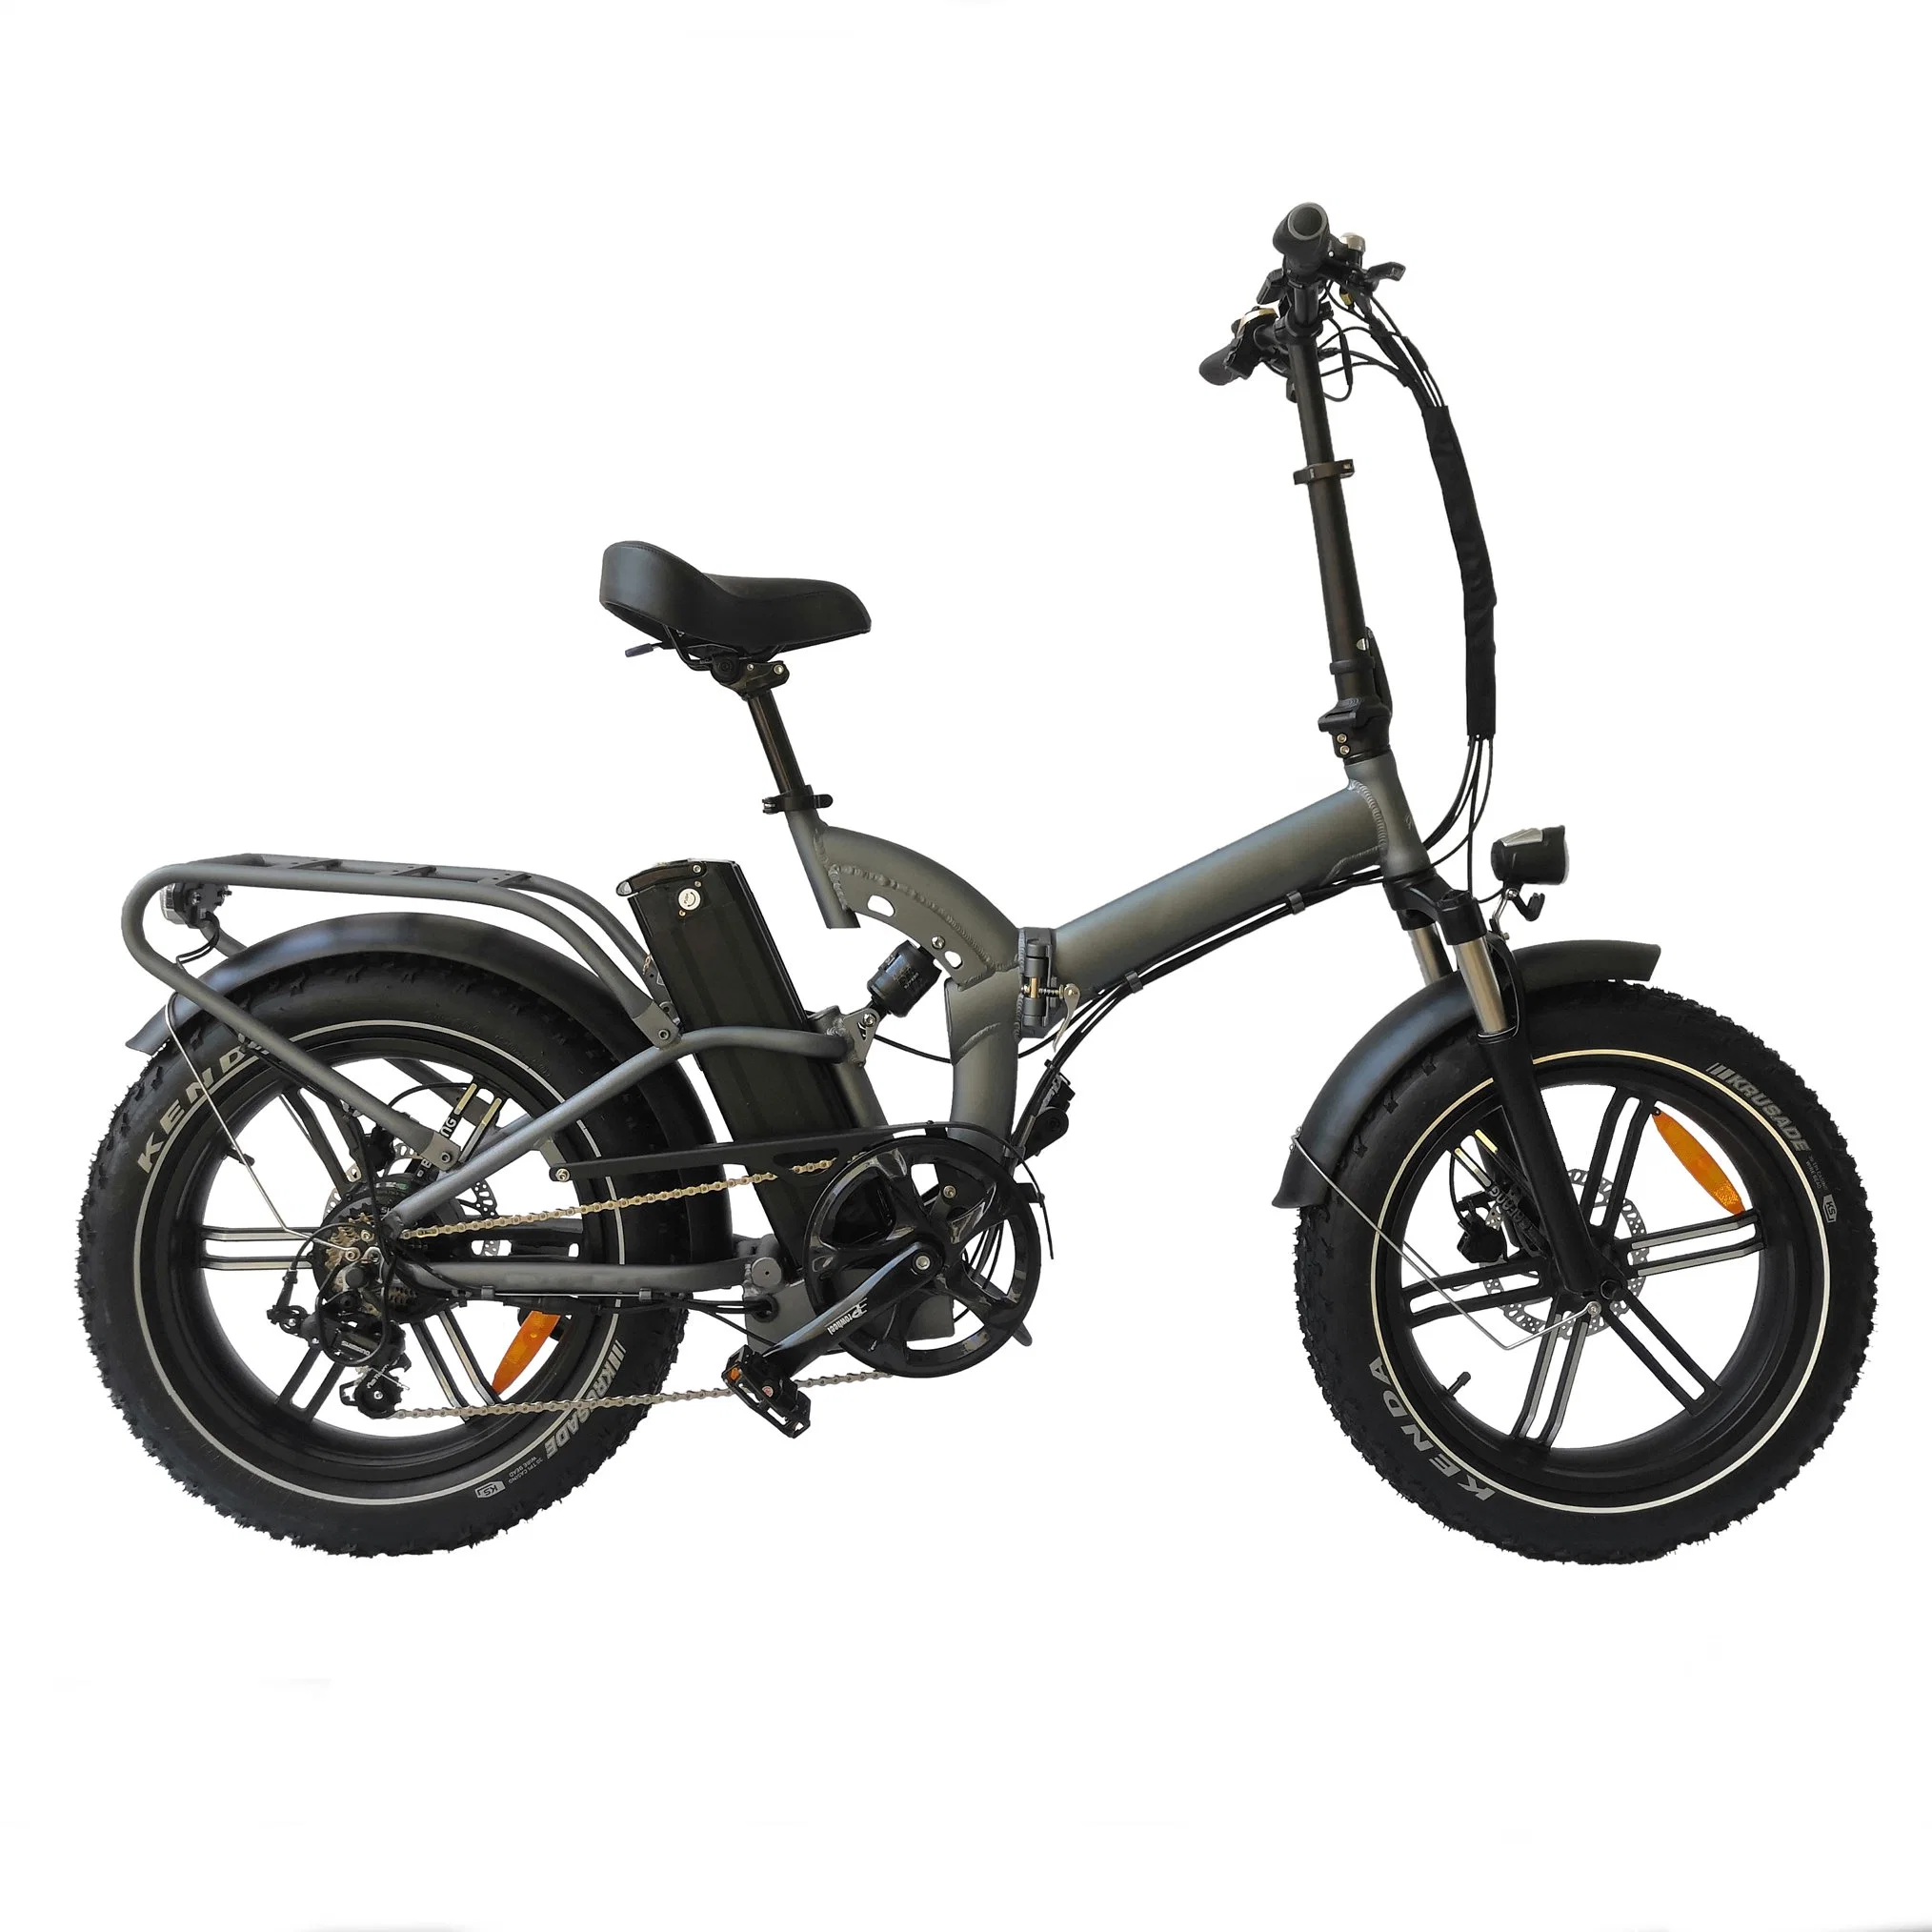 Moto e dobrável Nova liga de alumínio de 20polegadas adulto de 20V do modelo novo Moto de pneu com gordura elétrica de 1000 W/bicicleta com sujidade elétrica